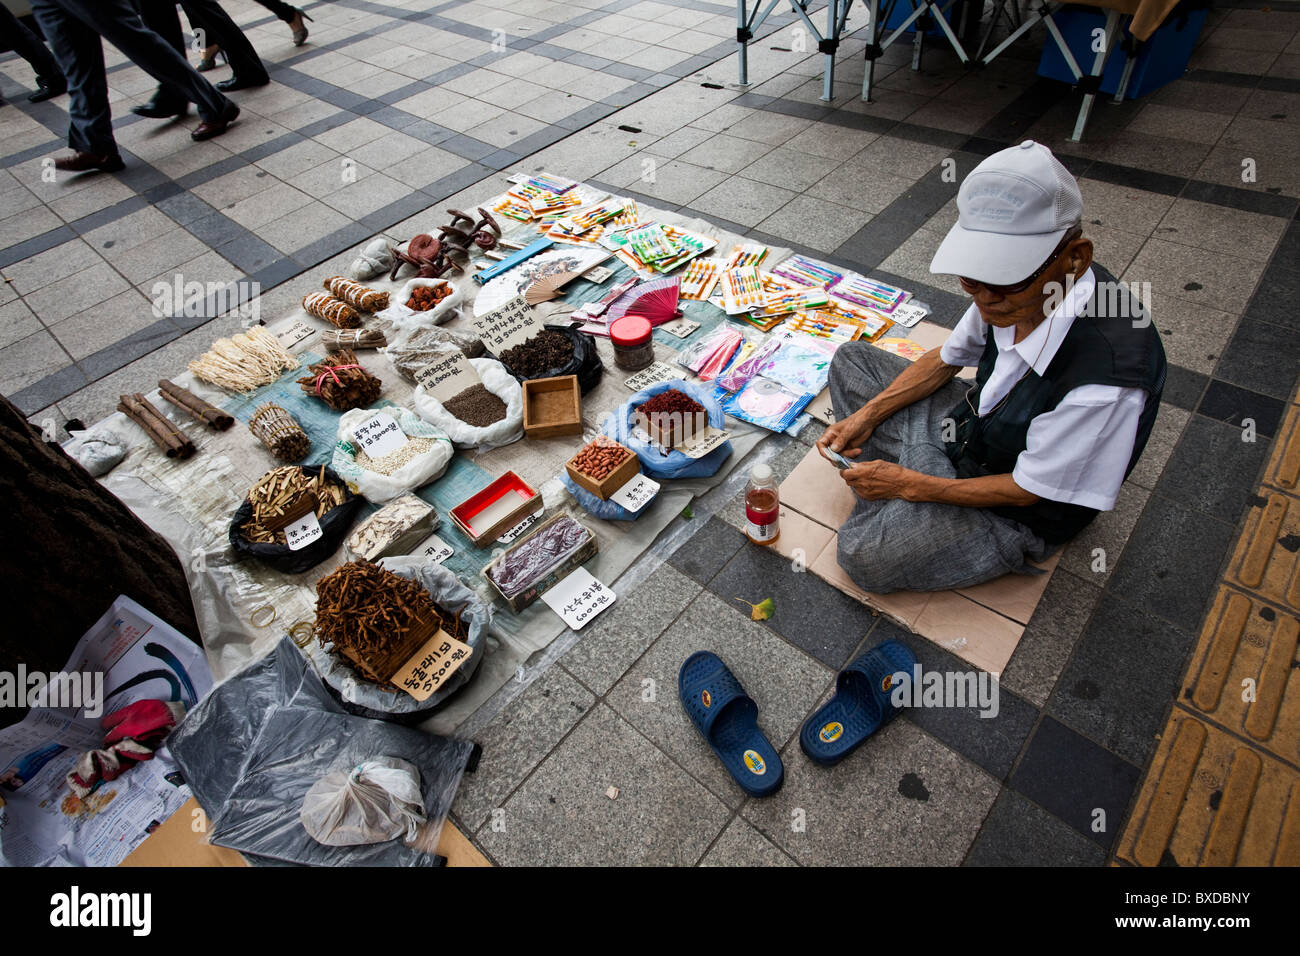 Tallone e una gioielleria e workshop in un mercato a Seul, Corea del Sud Foto Stock